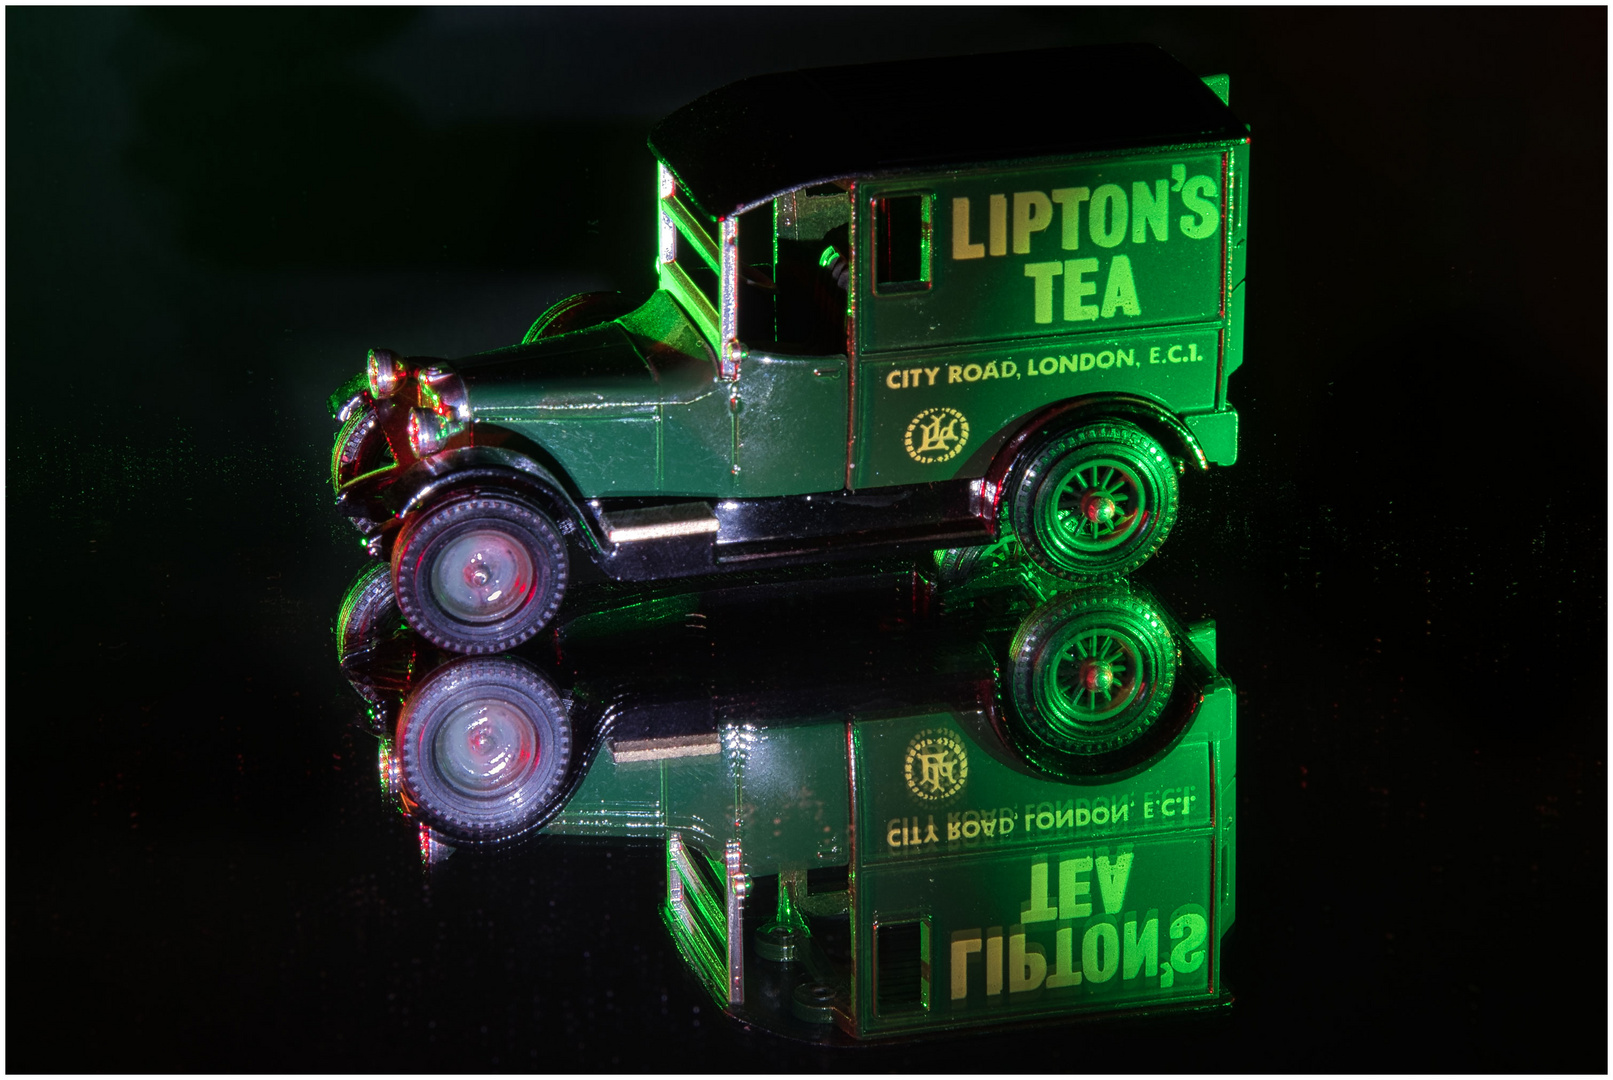 Lipton's Tea